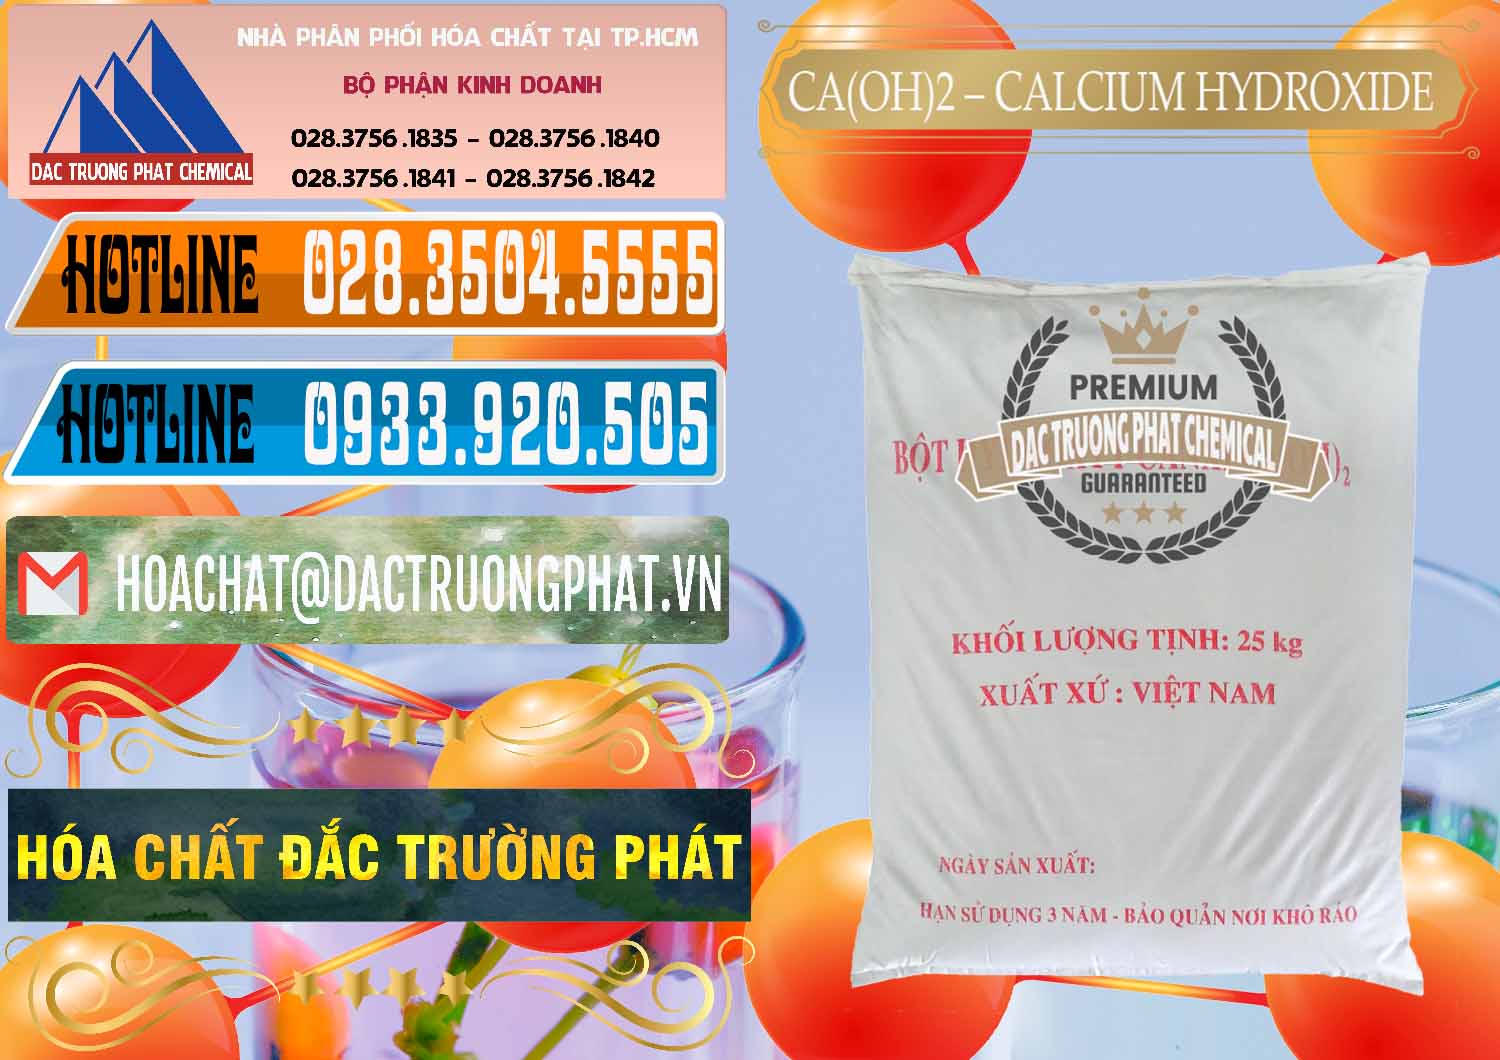 Nơi chuyên kinh doanh ( phân phối ) Ca(OH)2 - Calcium Hydroxide Việt Nam - 0186 - Công ty cung ứng và bán hóa chất tại TP.HCM - stmp.net